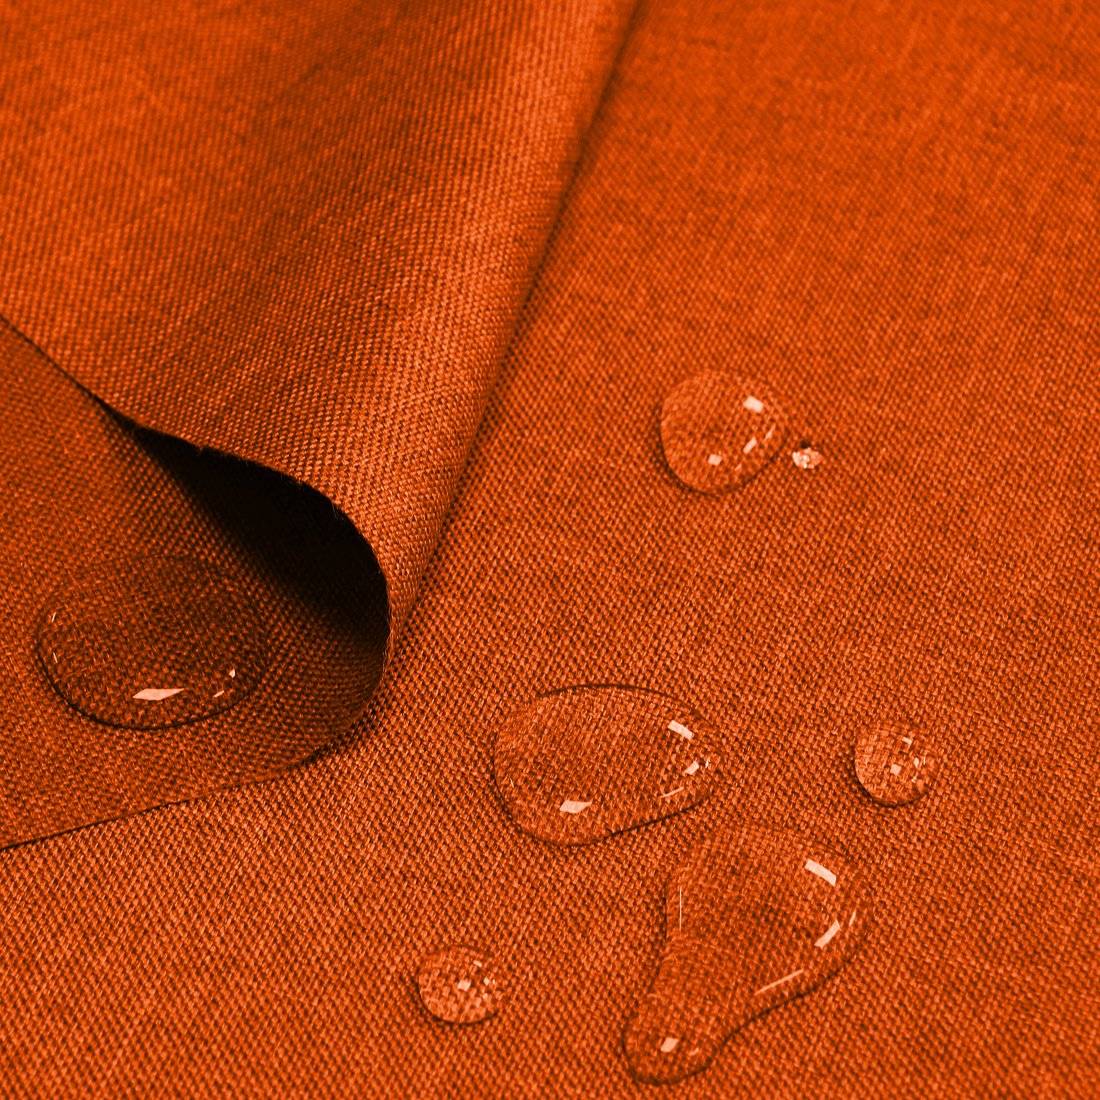 Непромокаемая ткань, виды водоотталкивающих материалов (фото)